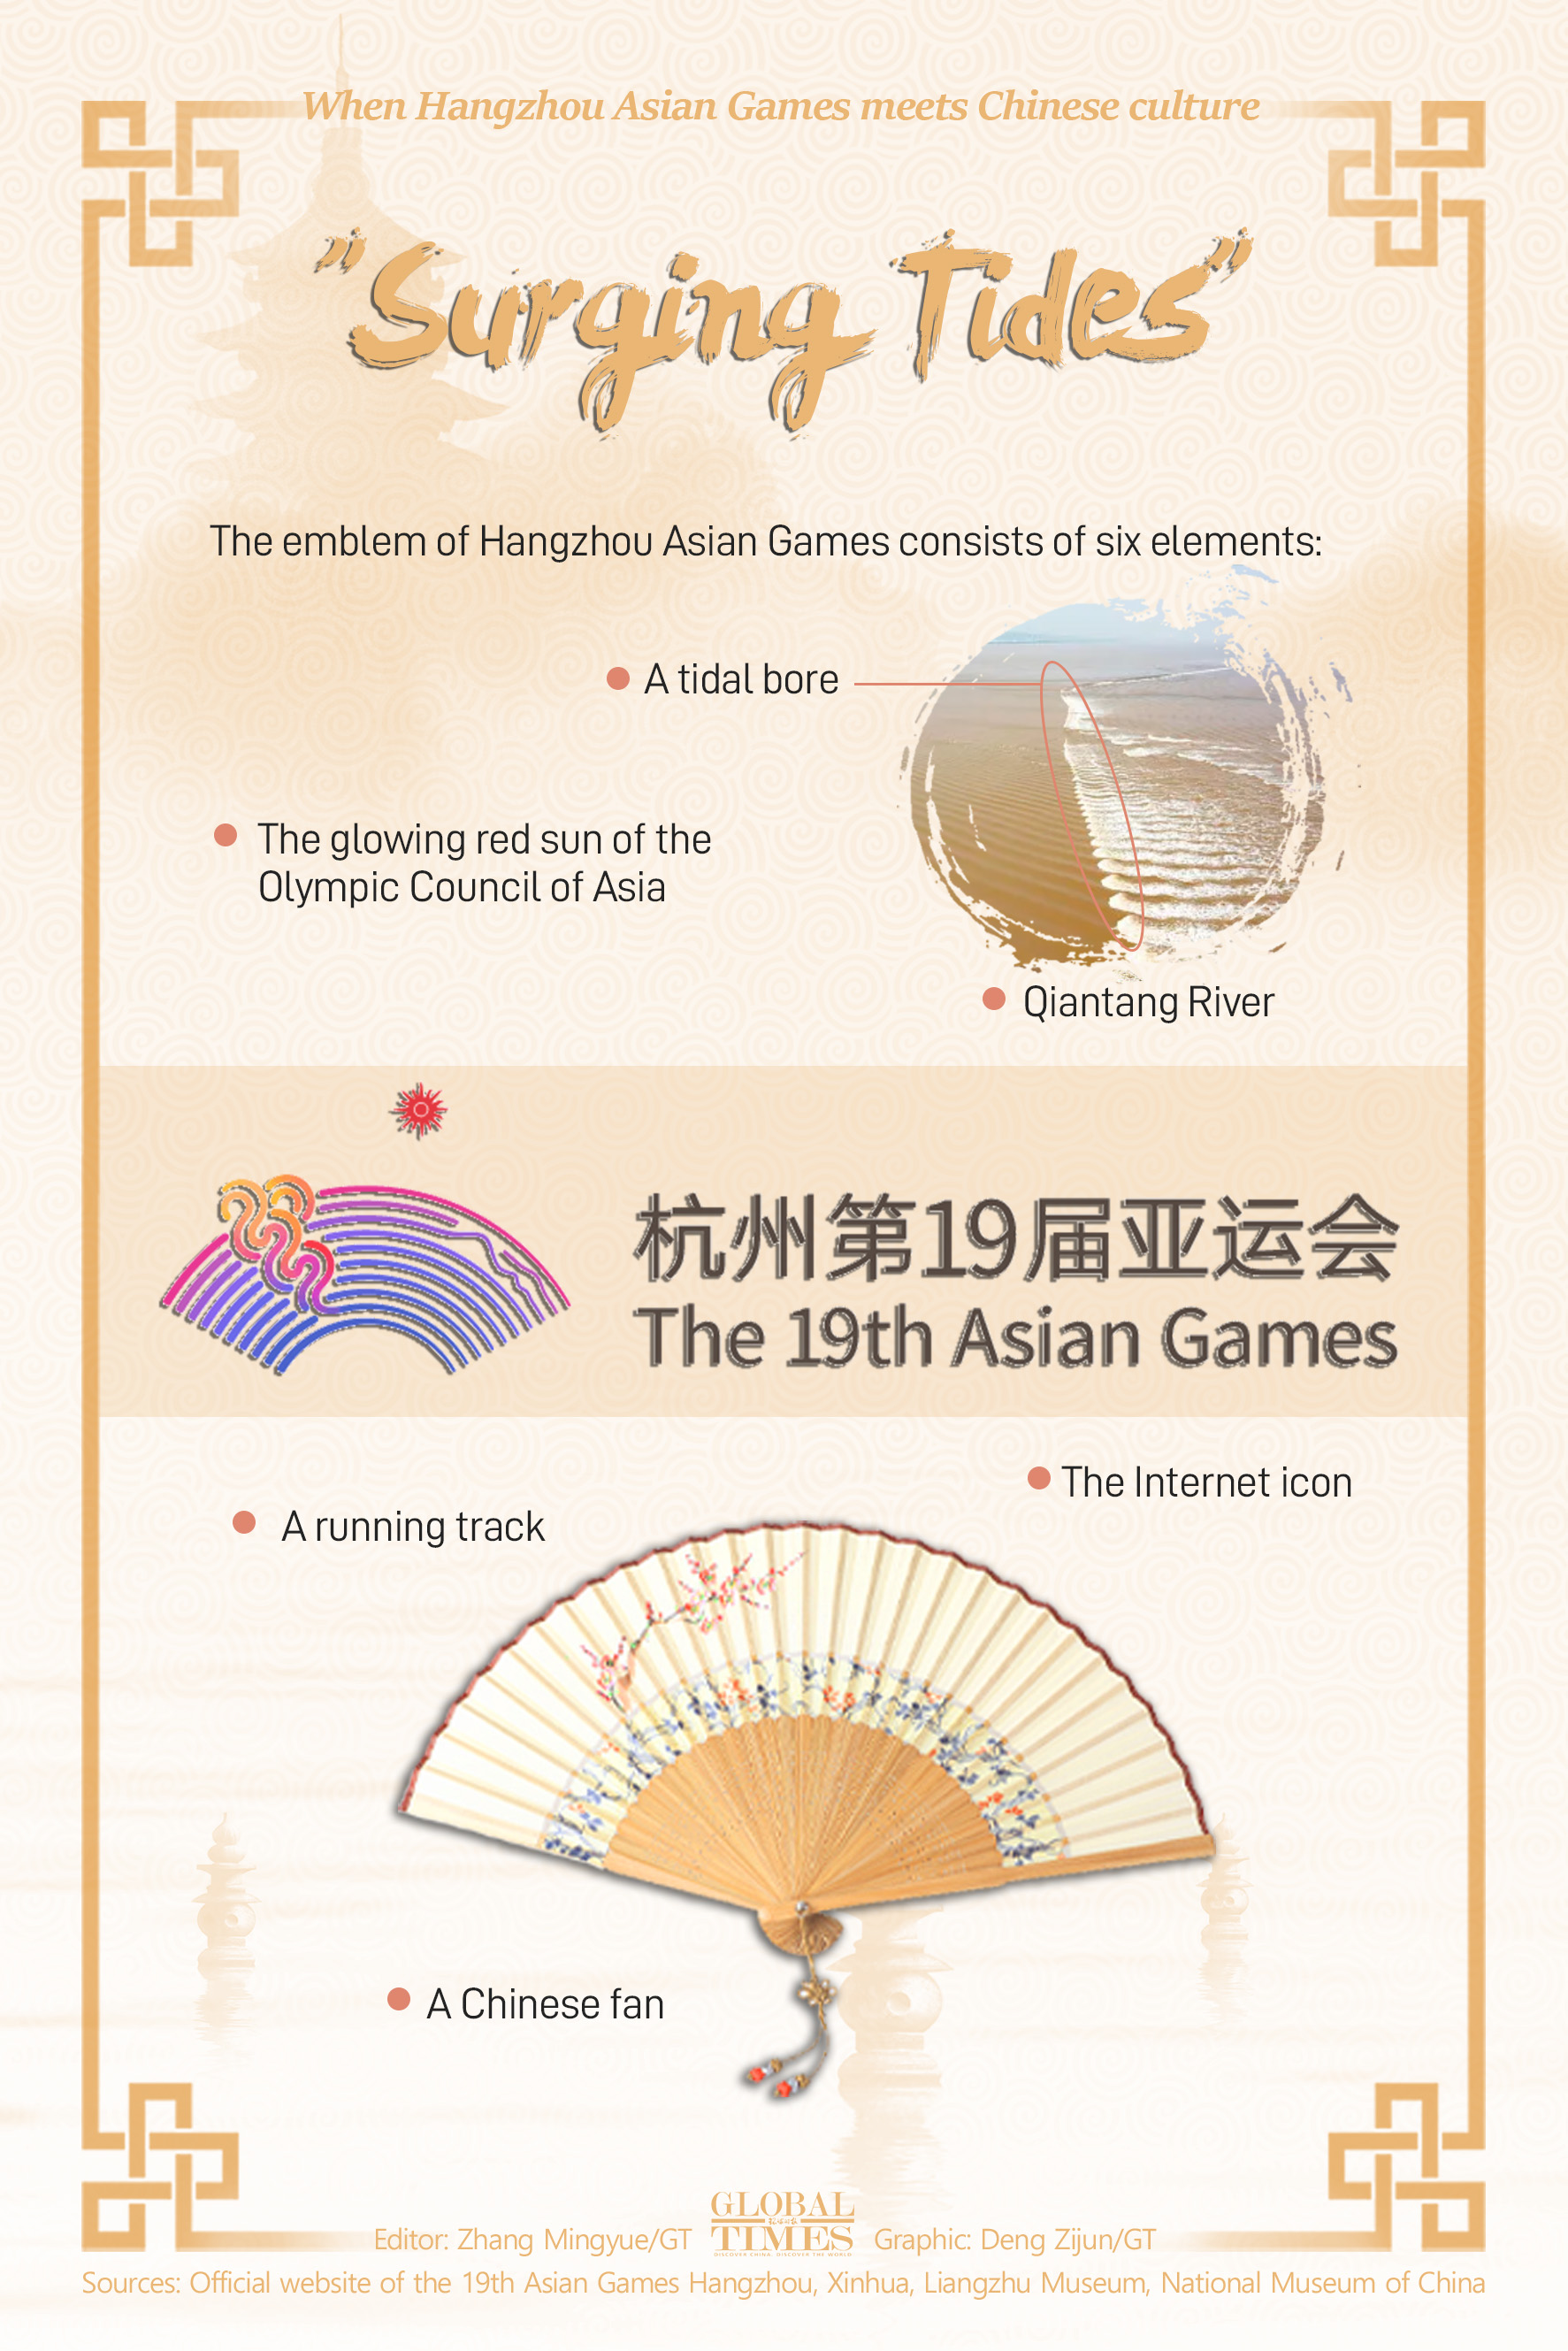 When Hangzhou Asian Games meets Chinese culture Graphic: Deng Zijun/GT